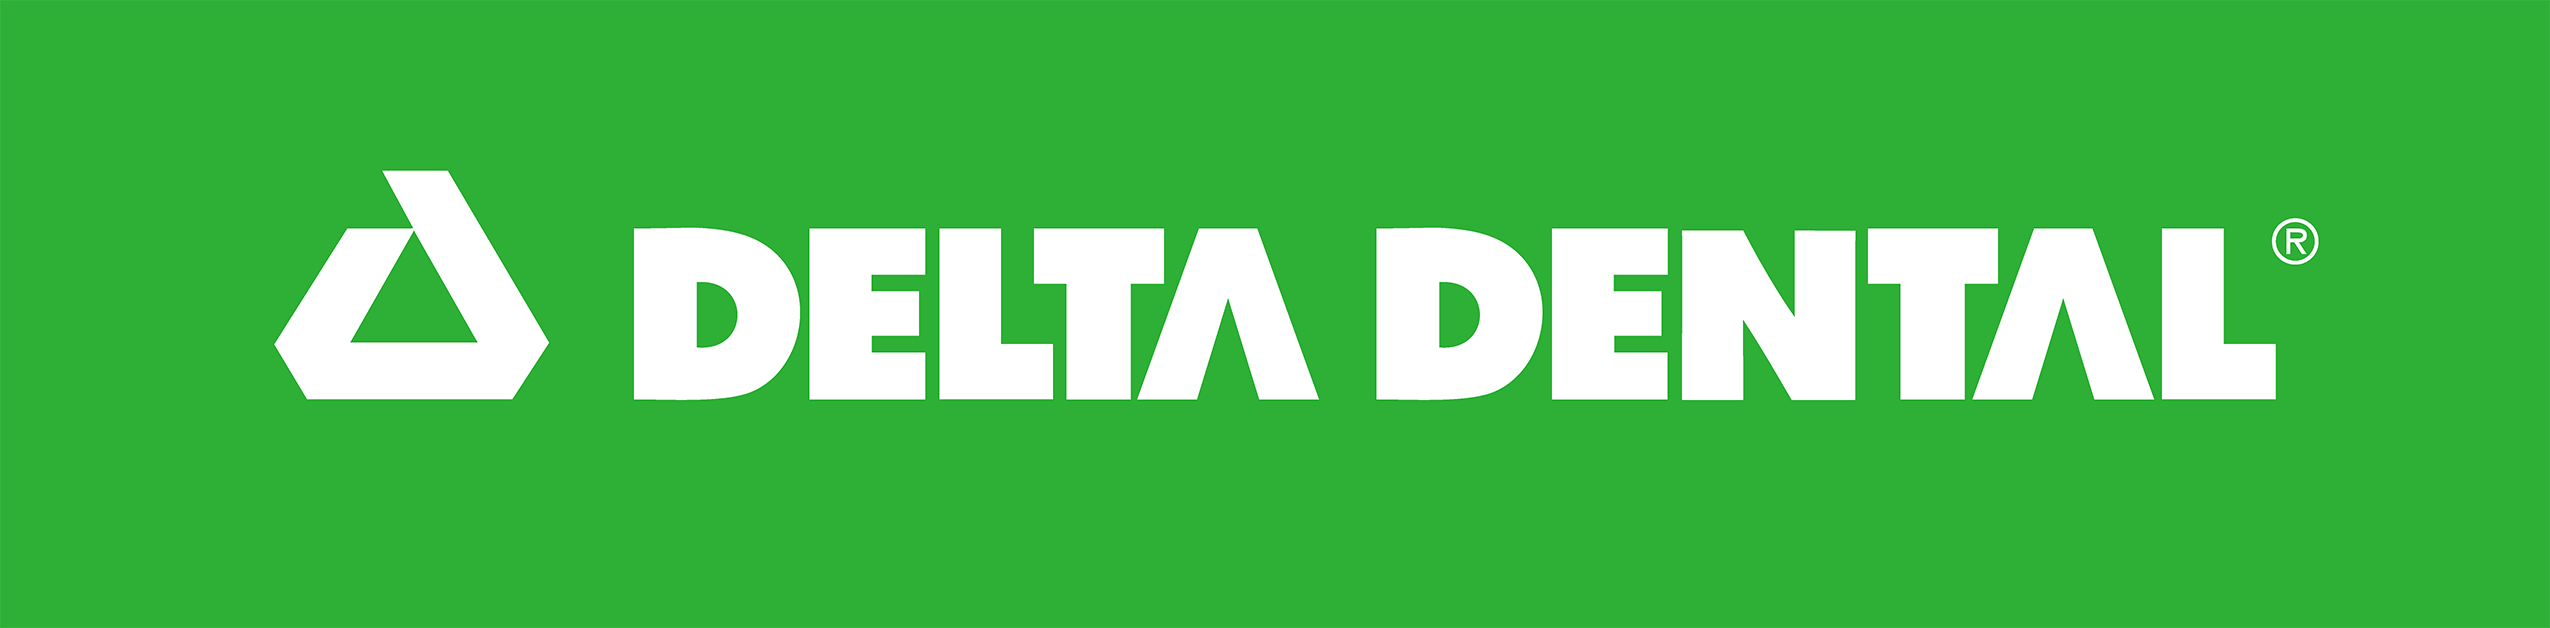 Northeast Delta Dental logo